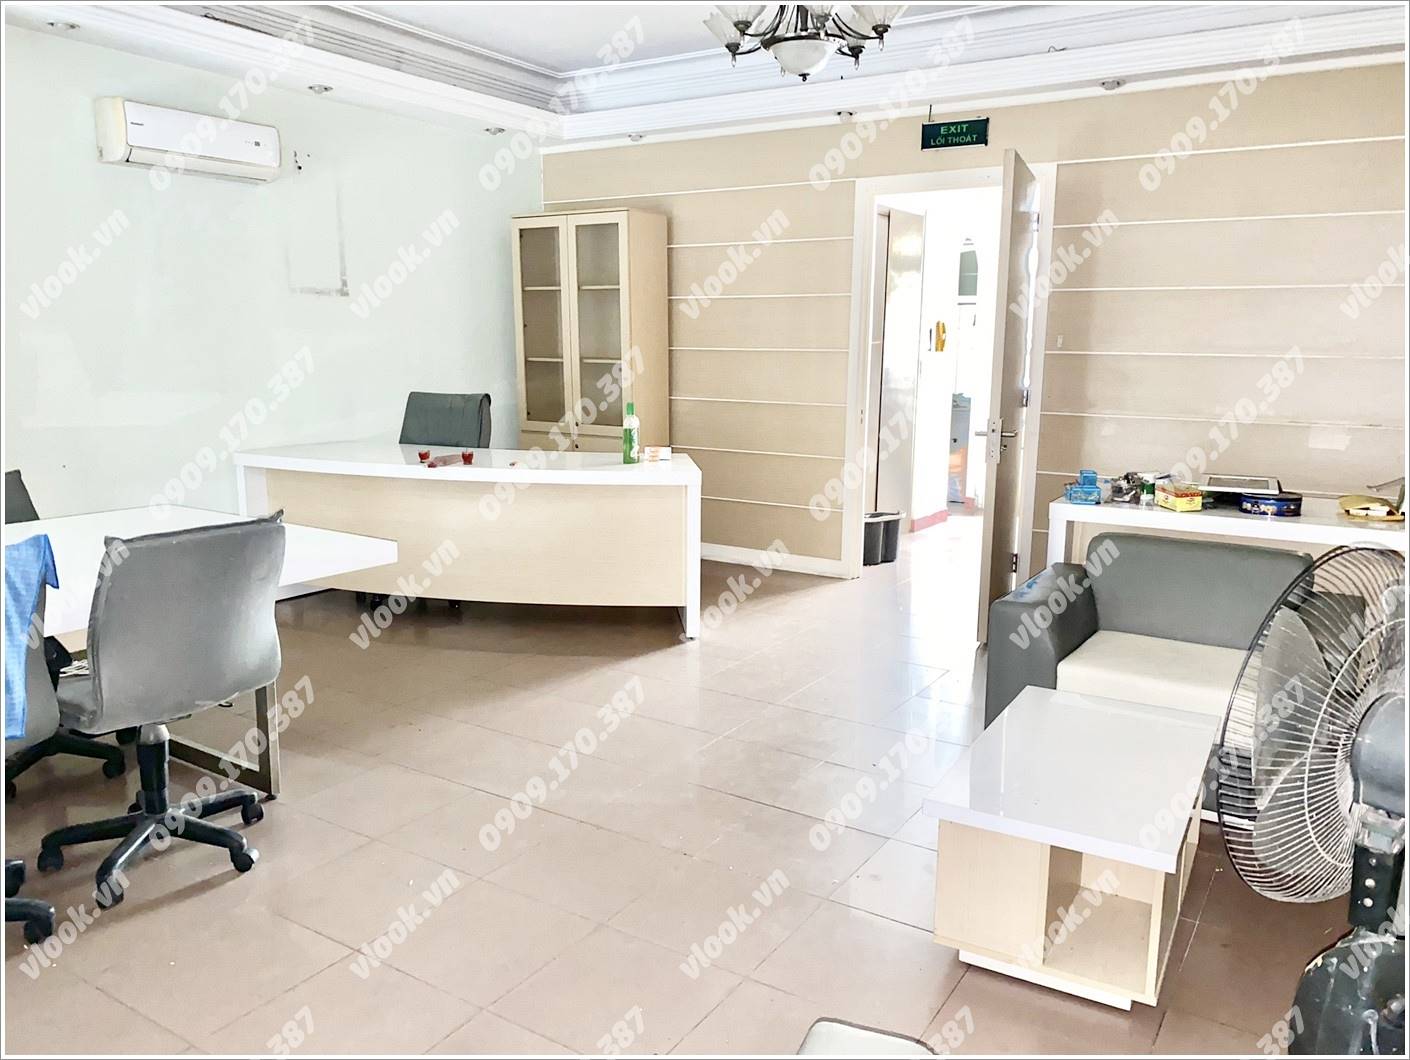 Cao ốc văn phòng cho thuê toà nhà Vi Office Khánh Hội 2, Quận 4, TPHCM - vlook.vn